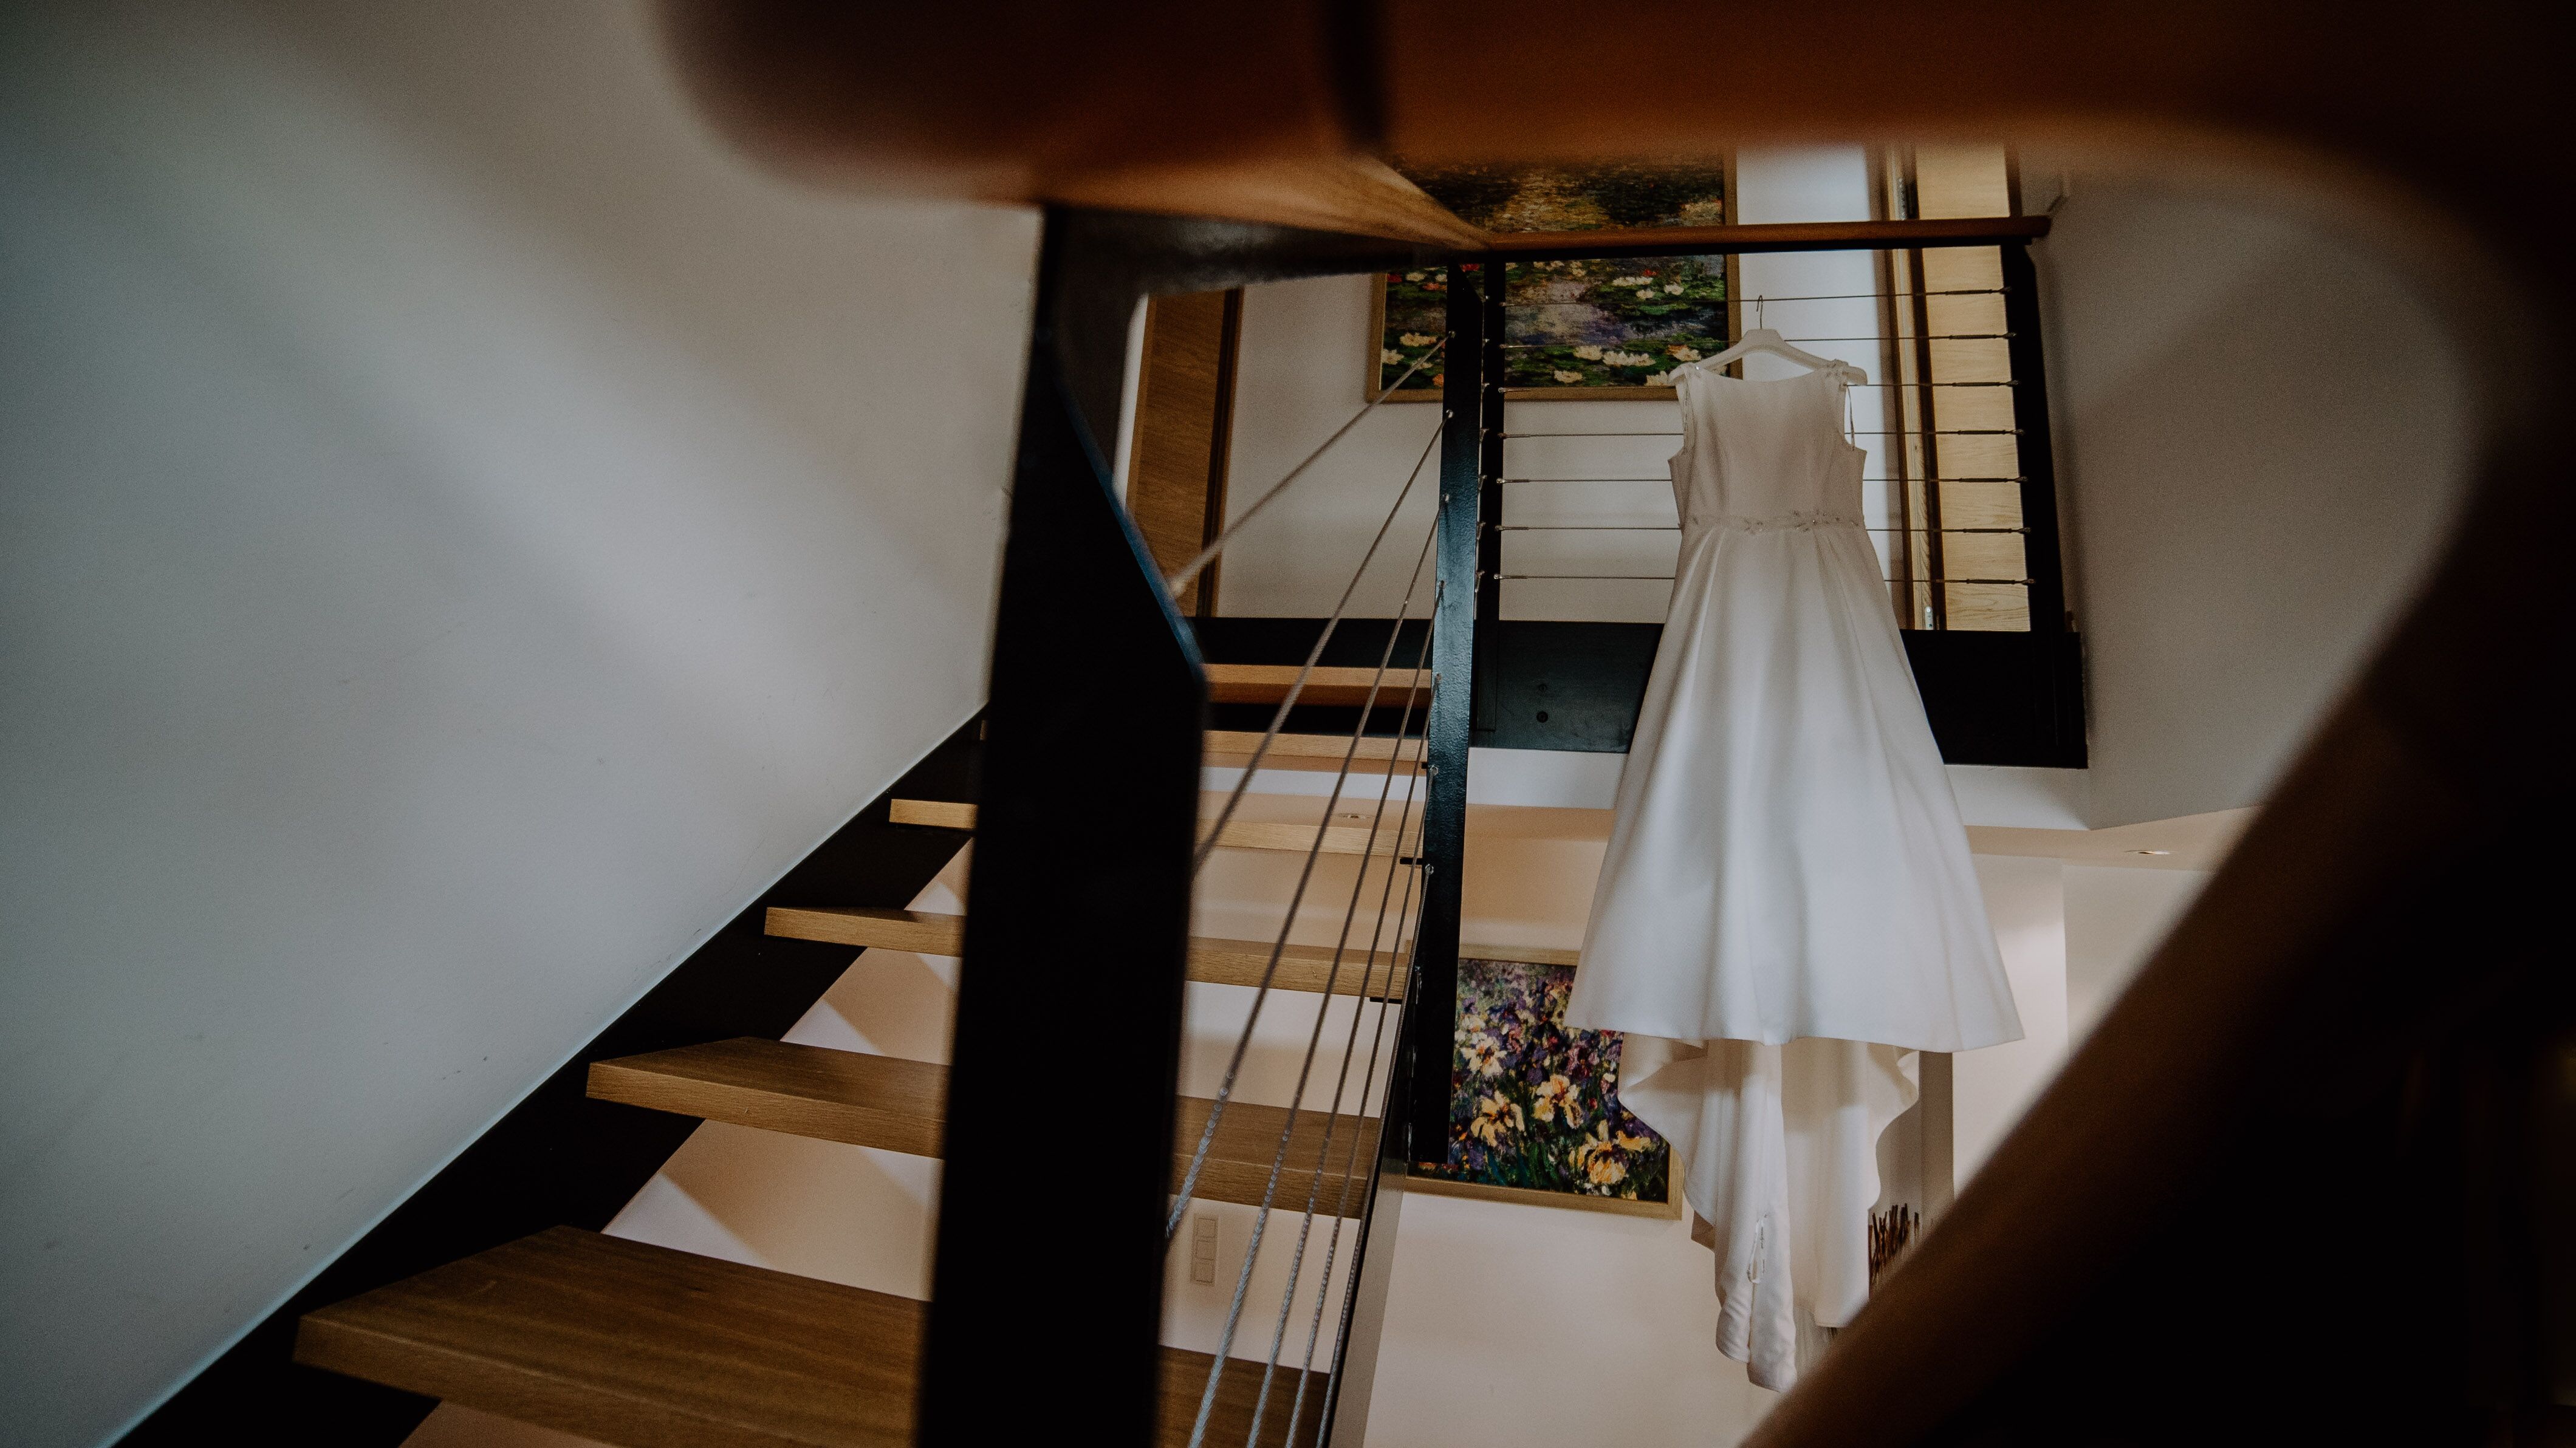 Brautkleid hängt aus in einem Hotel Hochzeit Kamerakinder Weddings